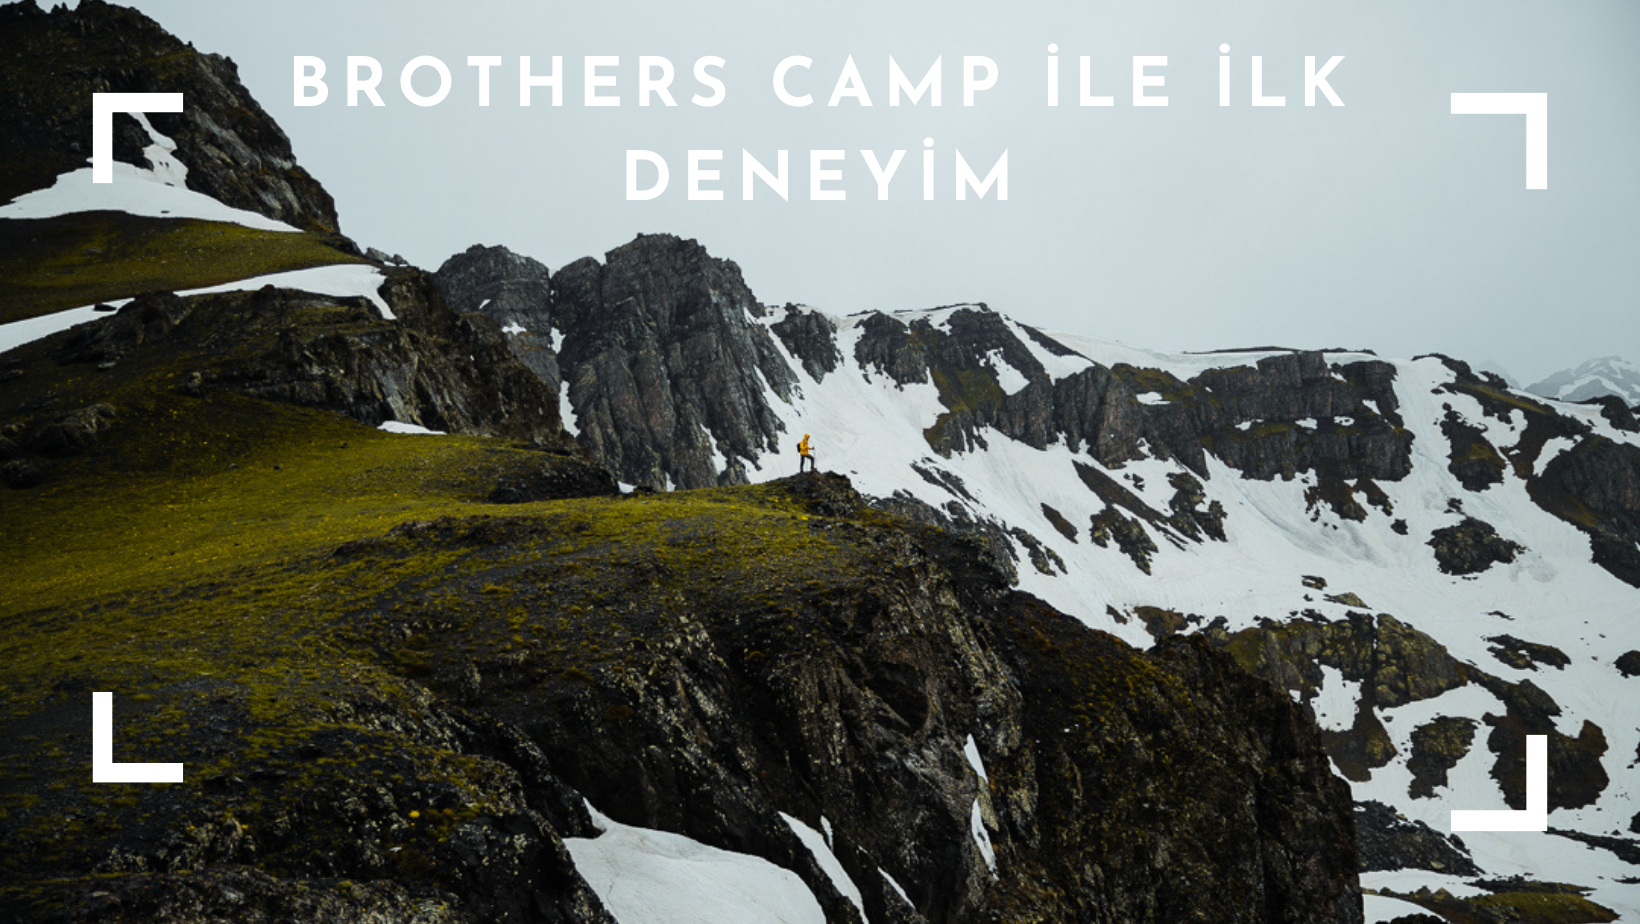 Brothers Camp ile İlk Deneyim